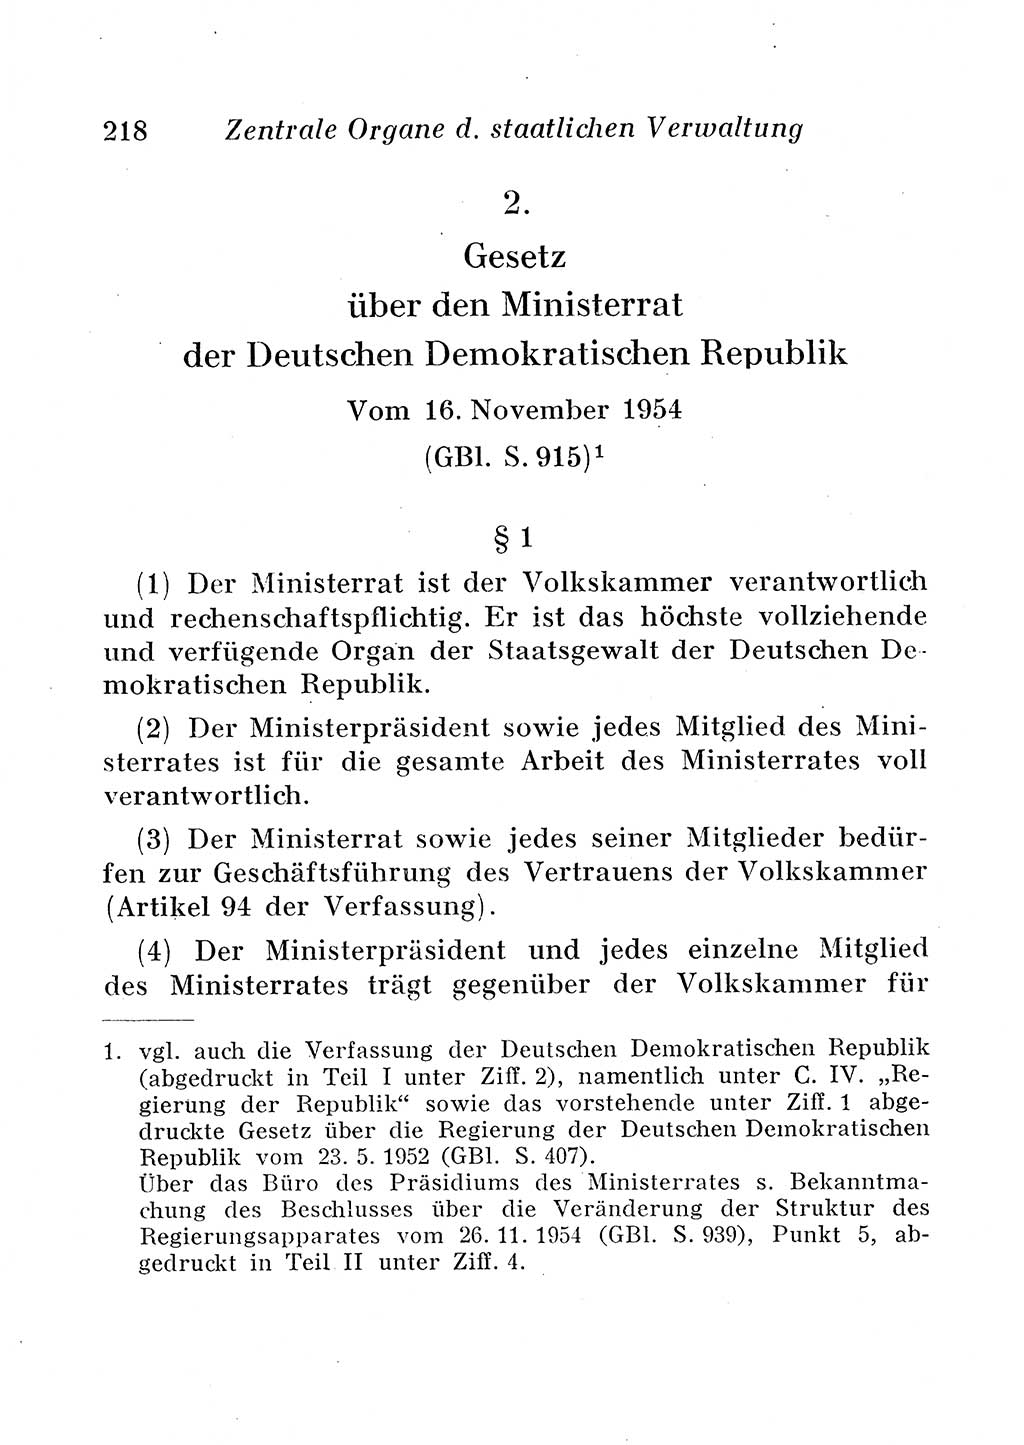 Staats- und verwaltungsrechtliche Gesetze der Deutschen Demokratischen Republik (DDR) 1958, Seite 218 (StVerwR Ges. DDR 1958, S. 218)